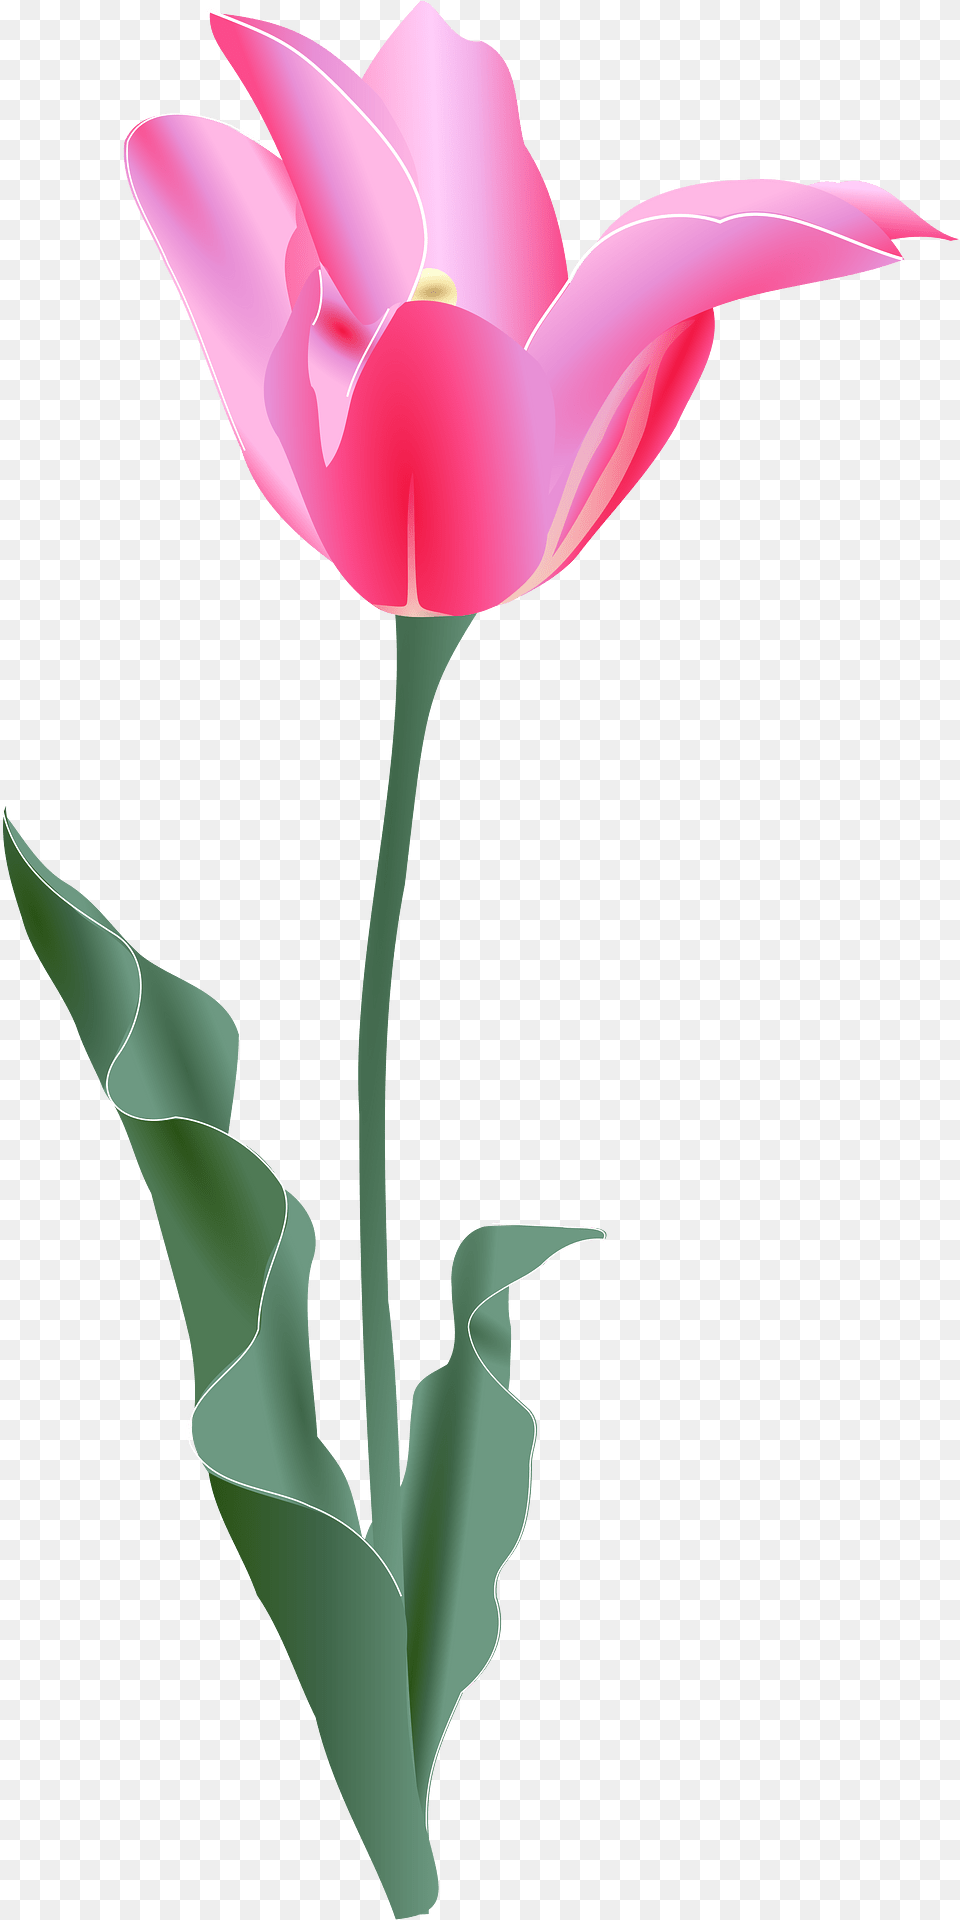 Tulip Clipart, Flower, Plant, Petal Free Transparent Png